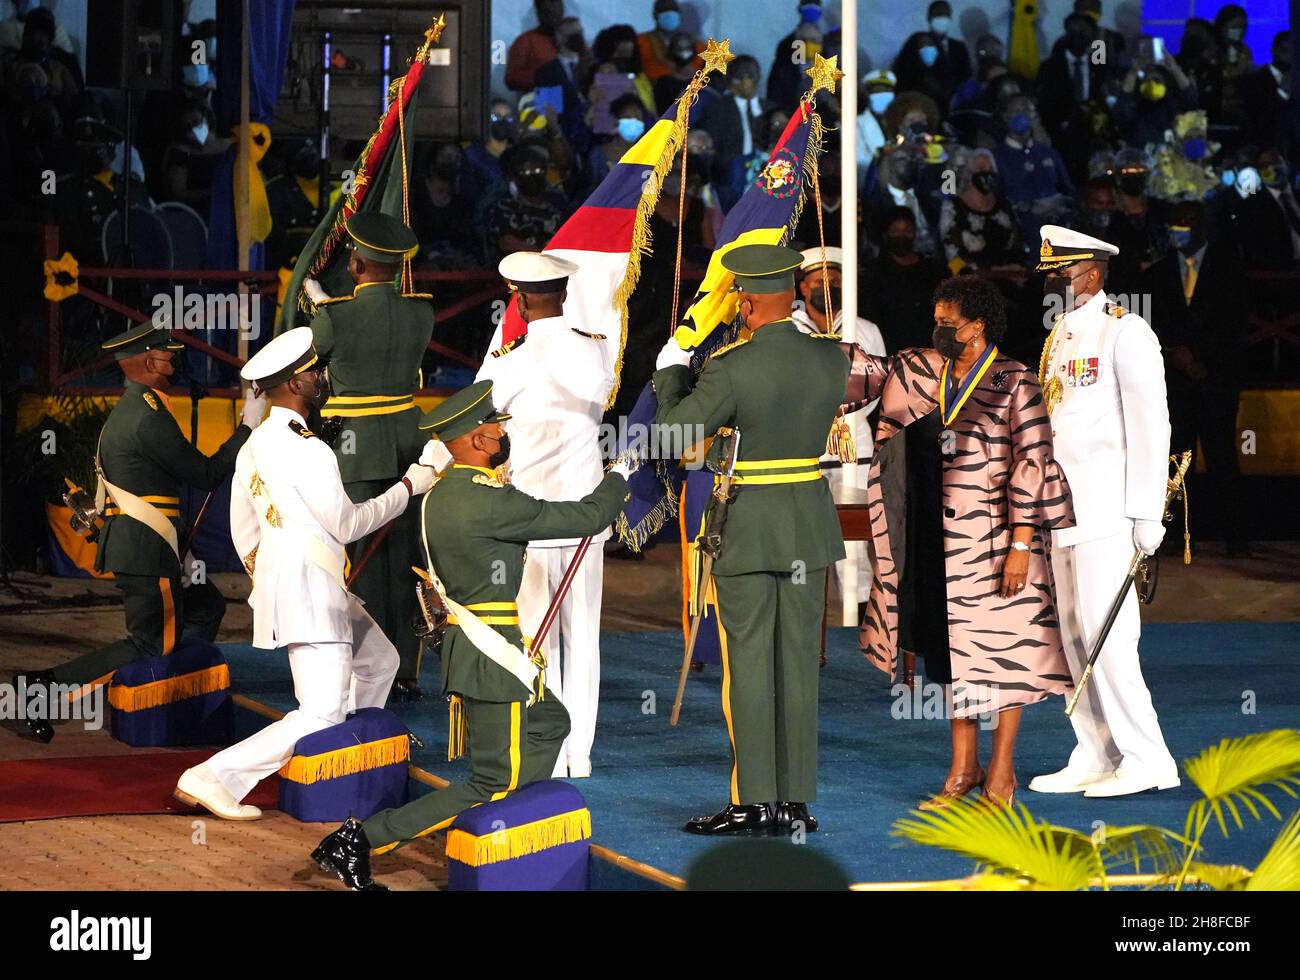 Präsidentin Sandra Mason (zweite rechts) inspiziert eine Gruppe von Standardträgern, nachdem sie den Orden von Barbados erhalten und während der Einweihungszeremonie des Präsidenten auf dem Heroes Square in Bridgetown, Barbados, als Präsidentin von Barbados vereidigt wurde. Bilddatum: Dienstag, 30. November 2021. Stockfoto